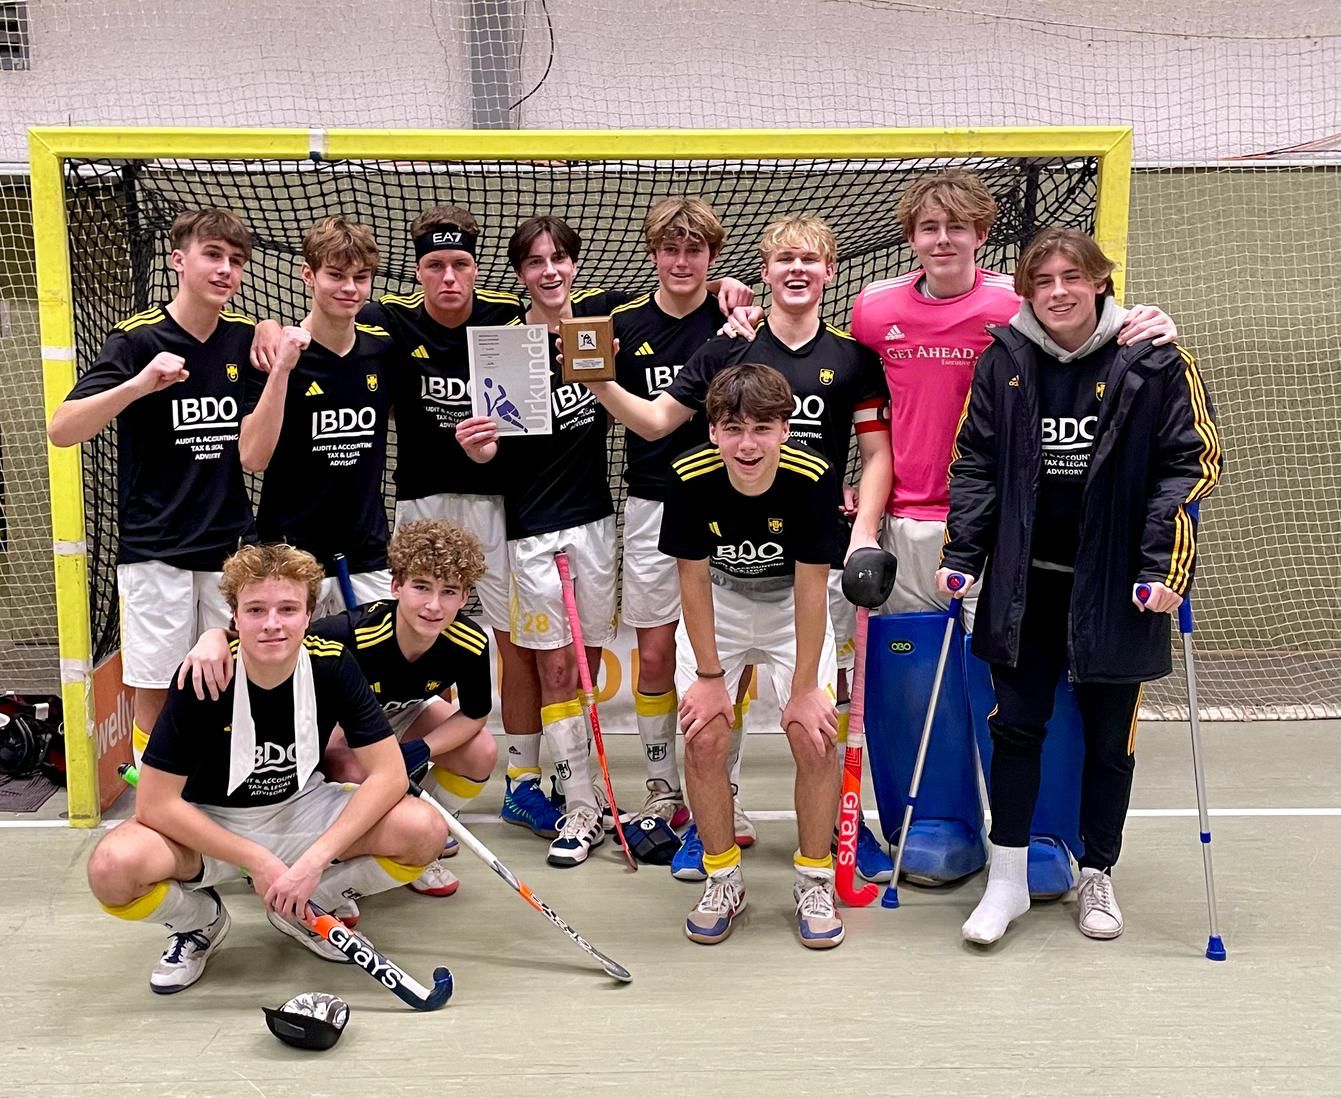 Jugendhockey: mU16  –  Nicht zuletzt noch ein Hamburger Meister und Qualifikant für die Nord-Ost Deutsche Meisterschaft